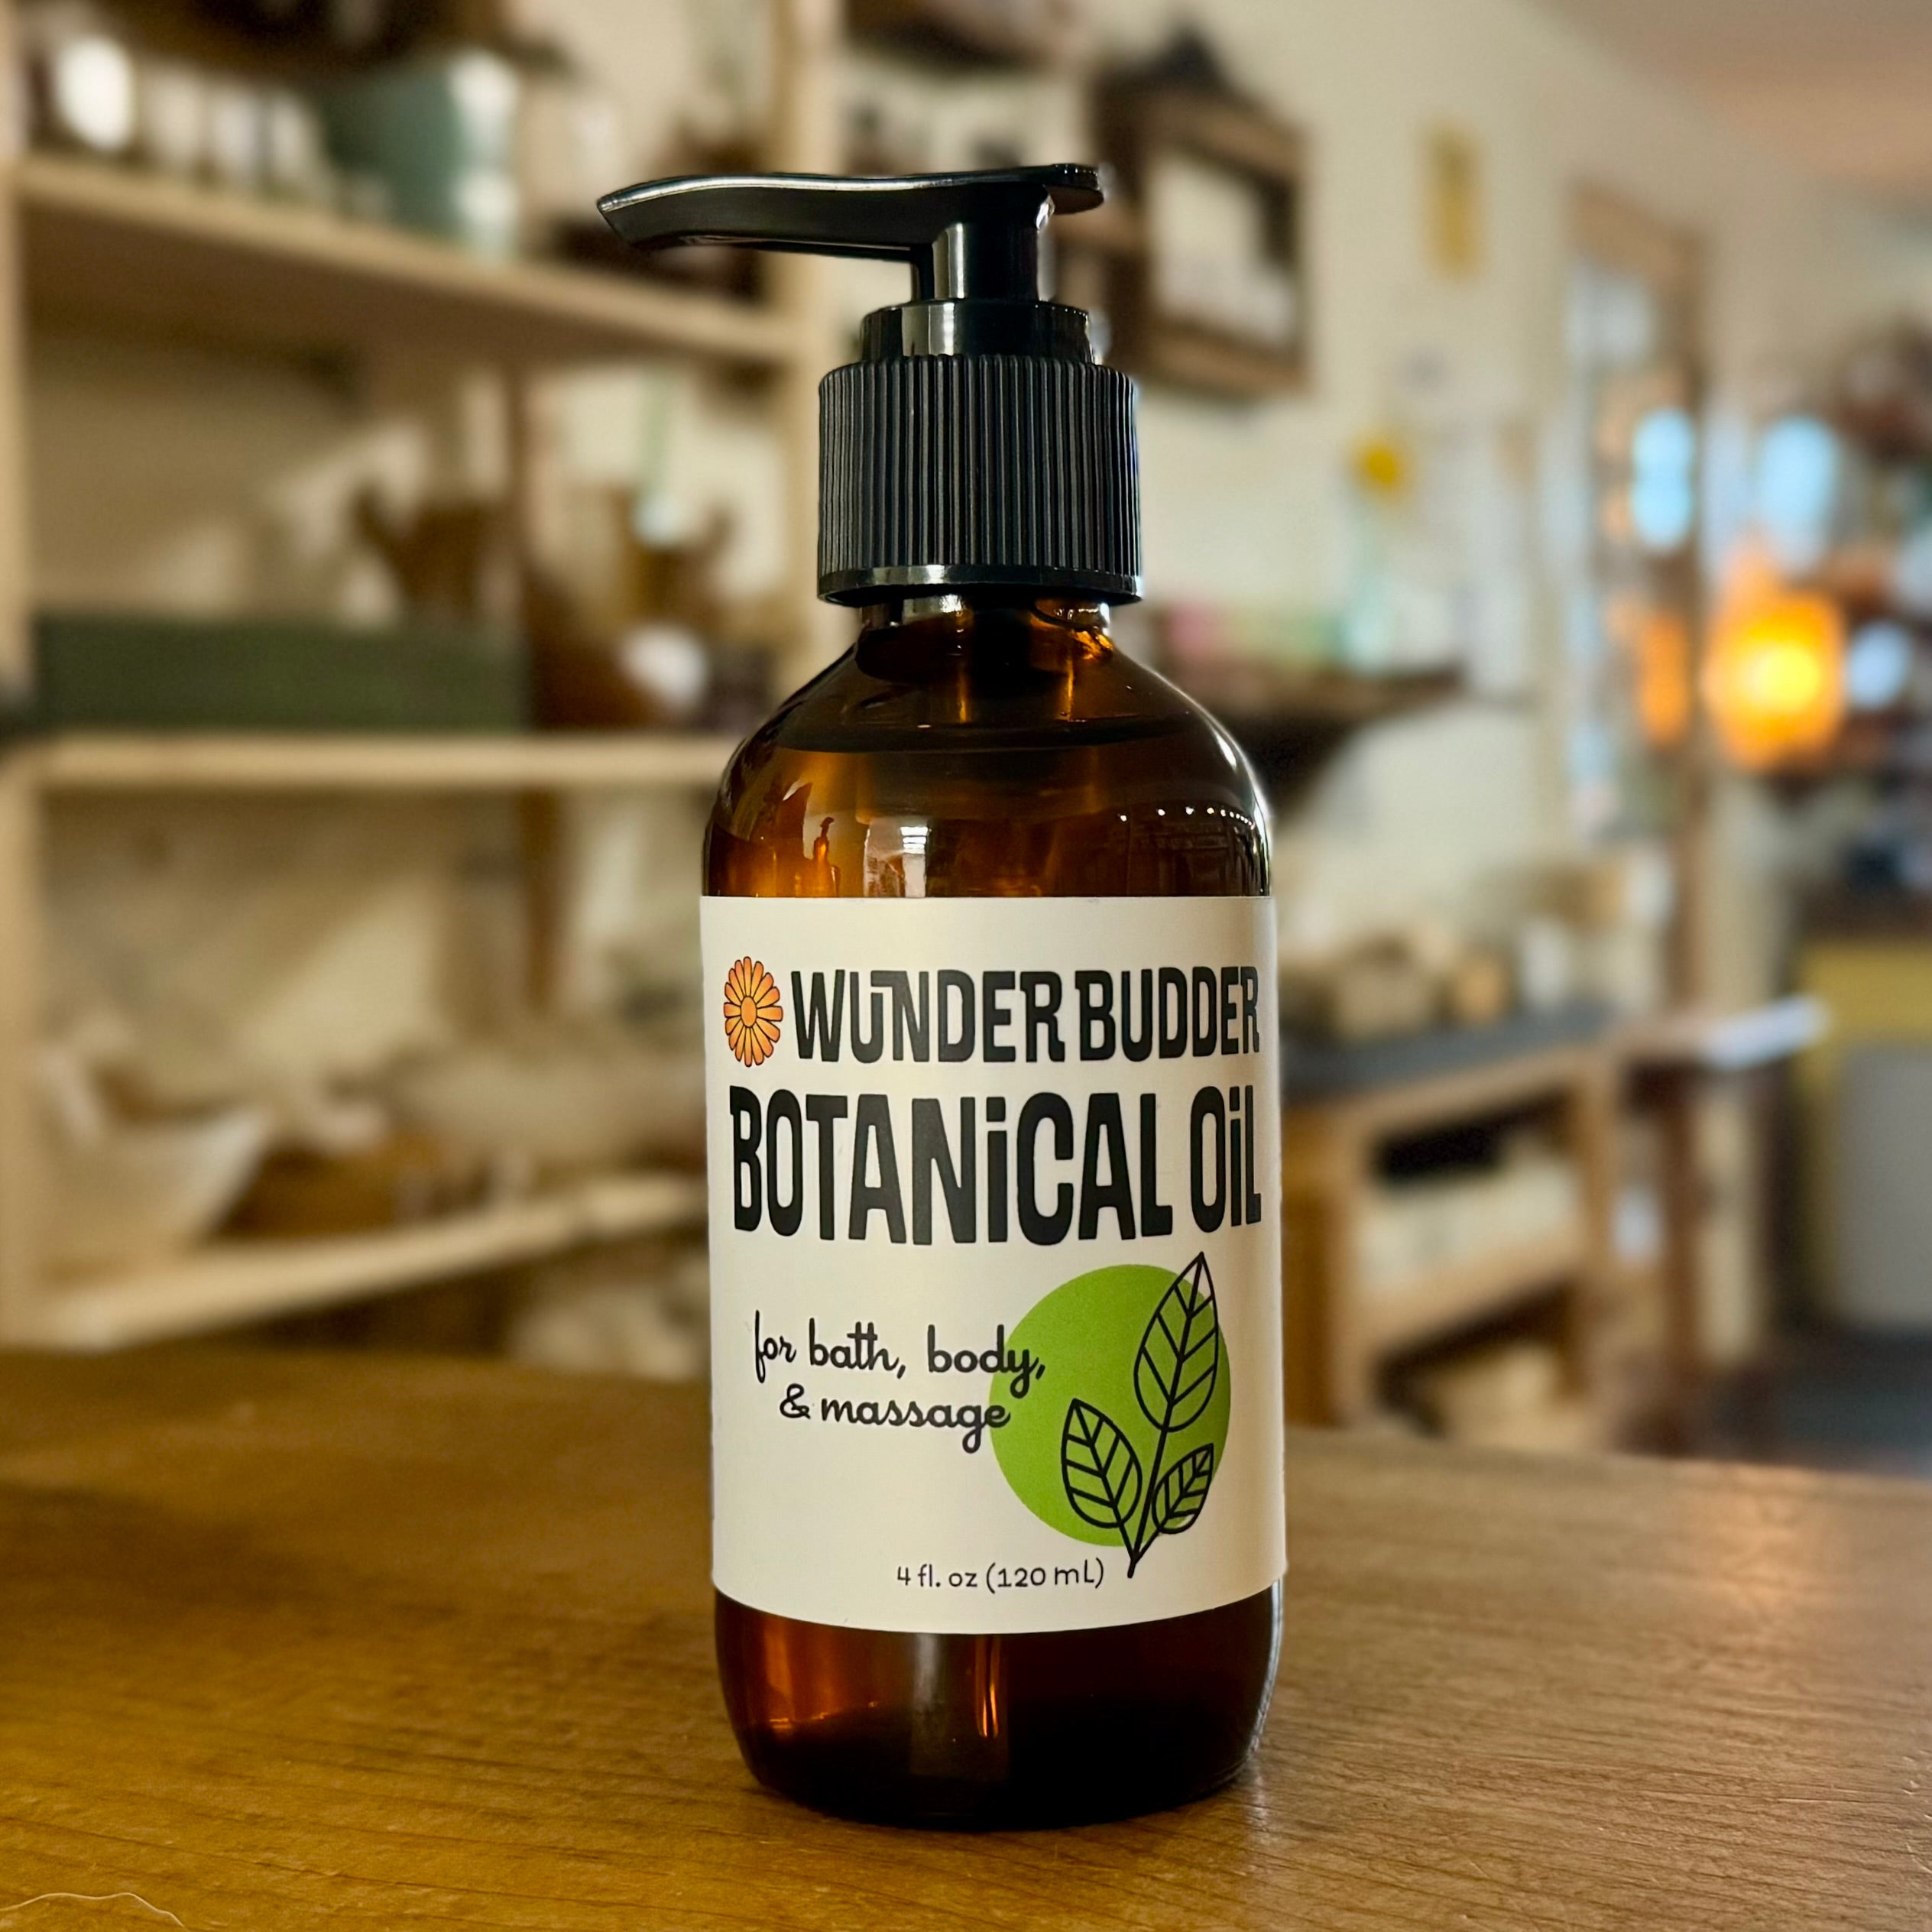 Botanical Oil by Wunder Budder